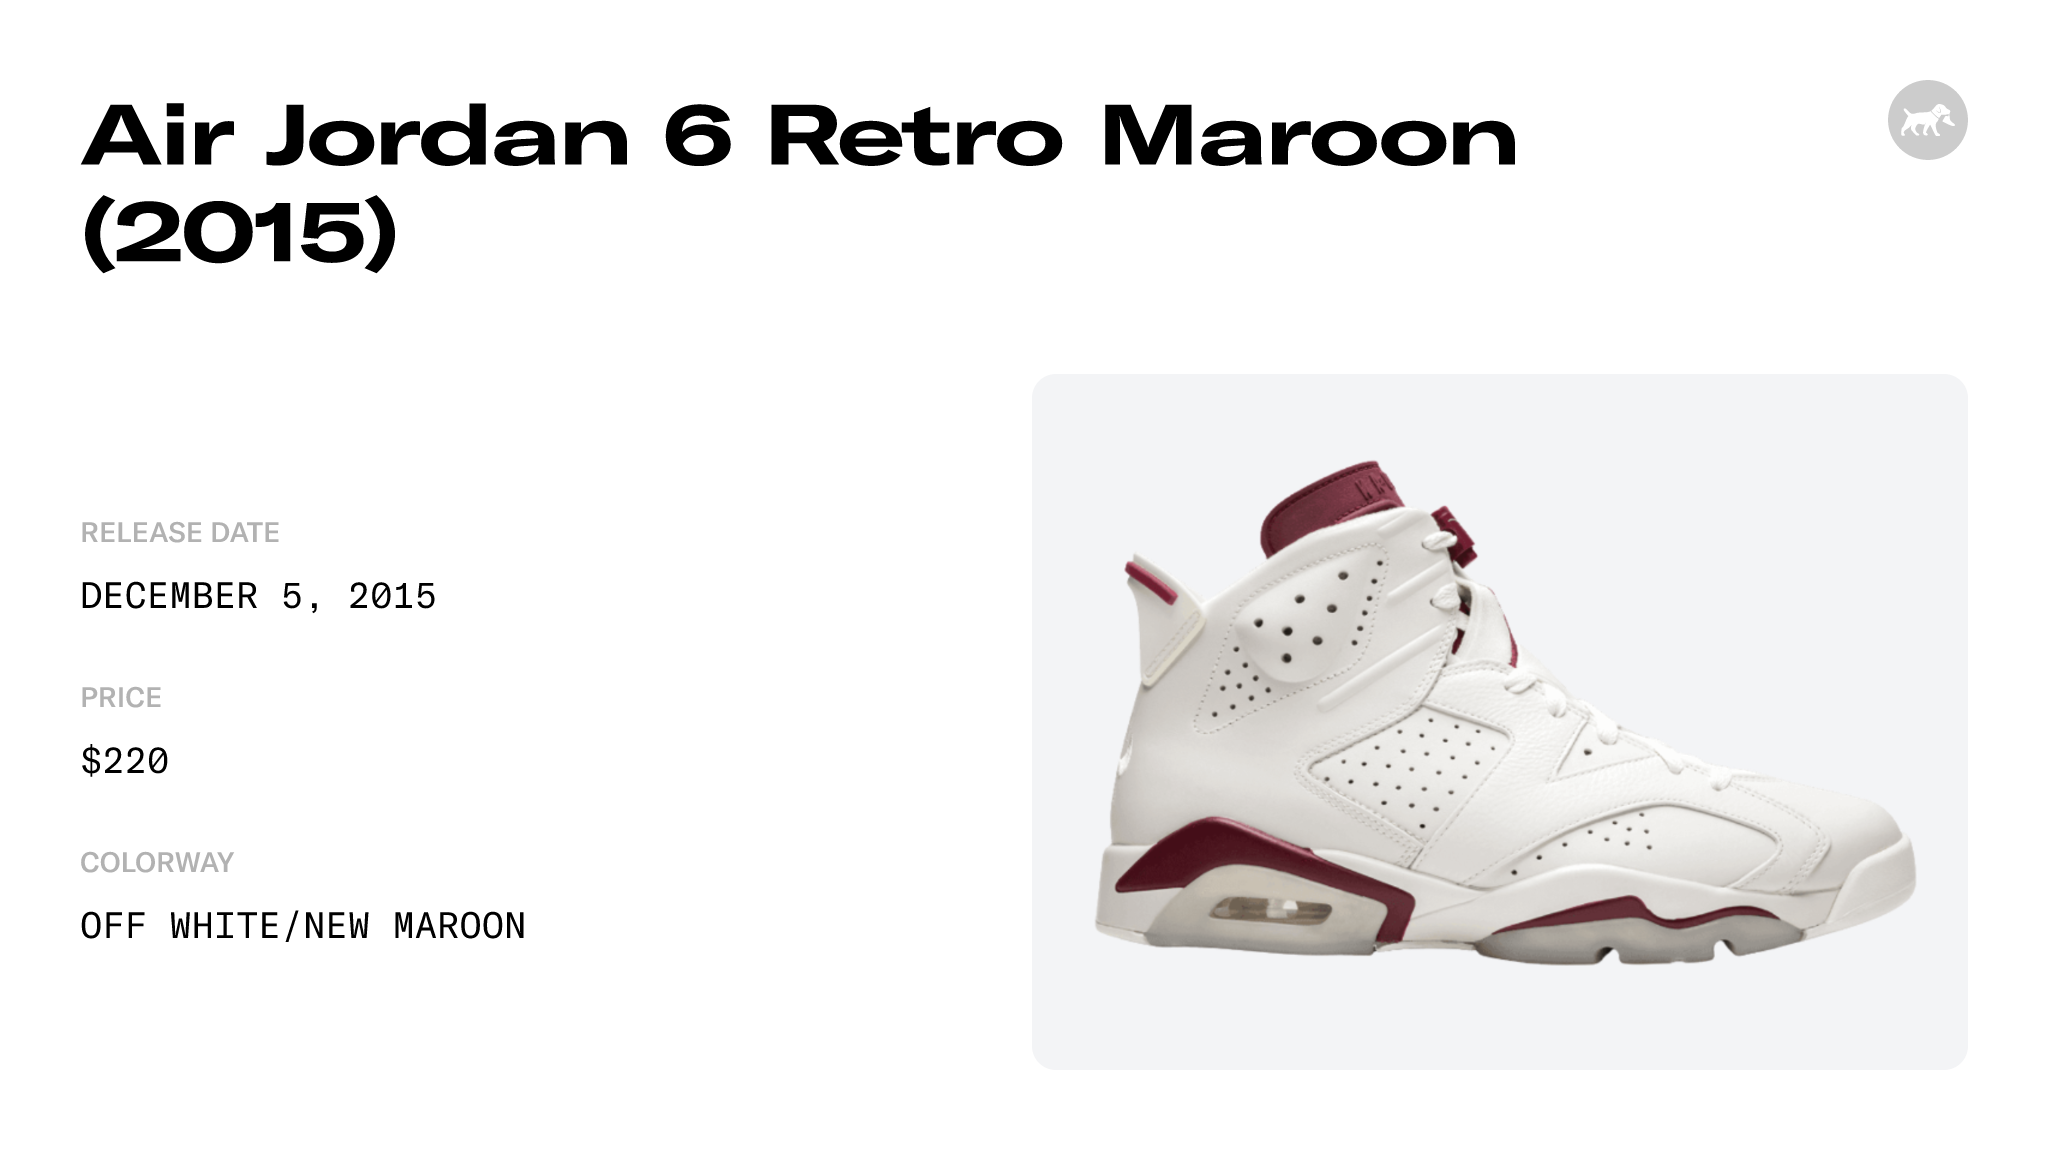 Air Jordan 6 Retro Maroon (2015) - 384664-116 Raffles and Release Date